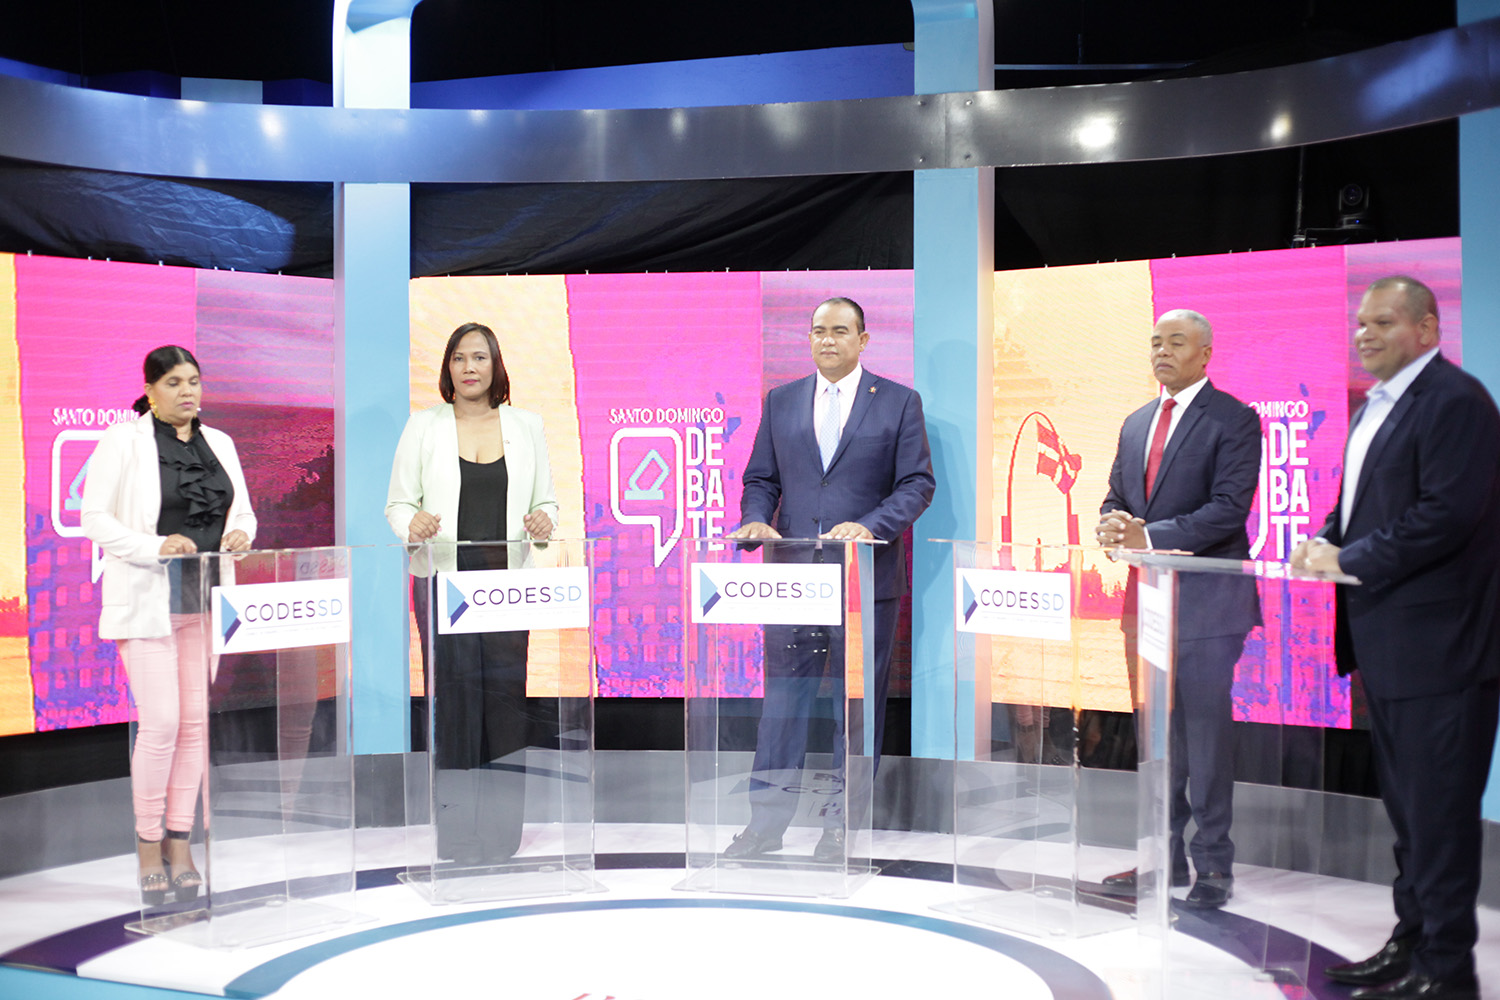 Santo Domingo Debate inició este lunes con cinco aspirantes a la Alcaldía de SDN